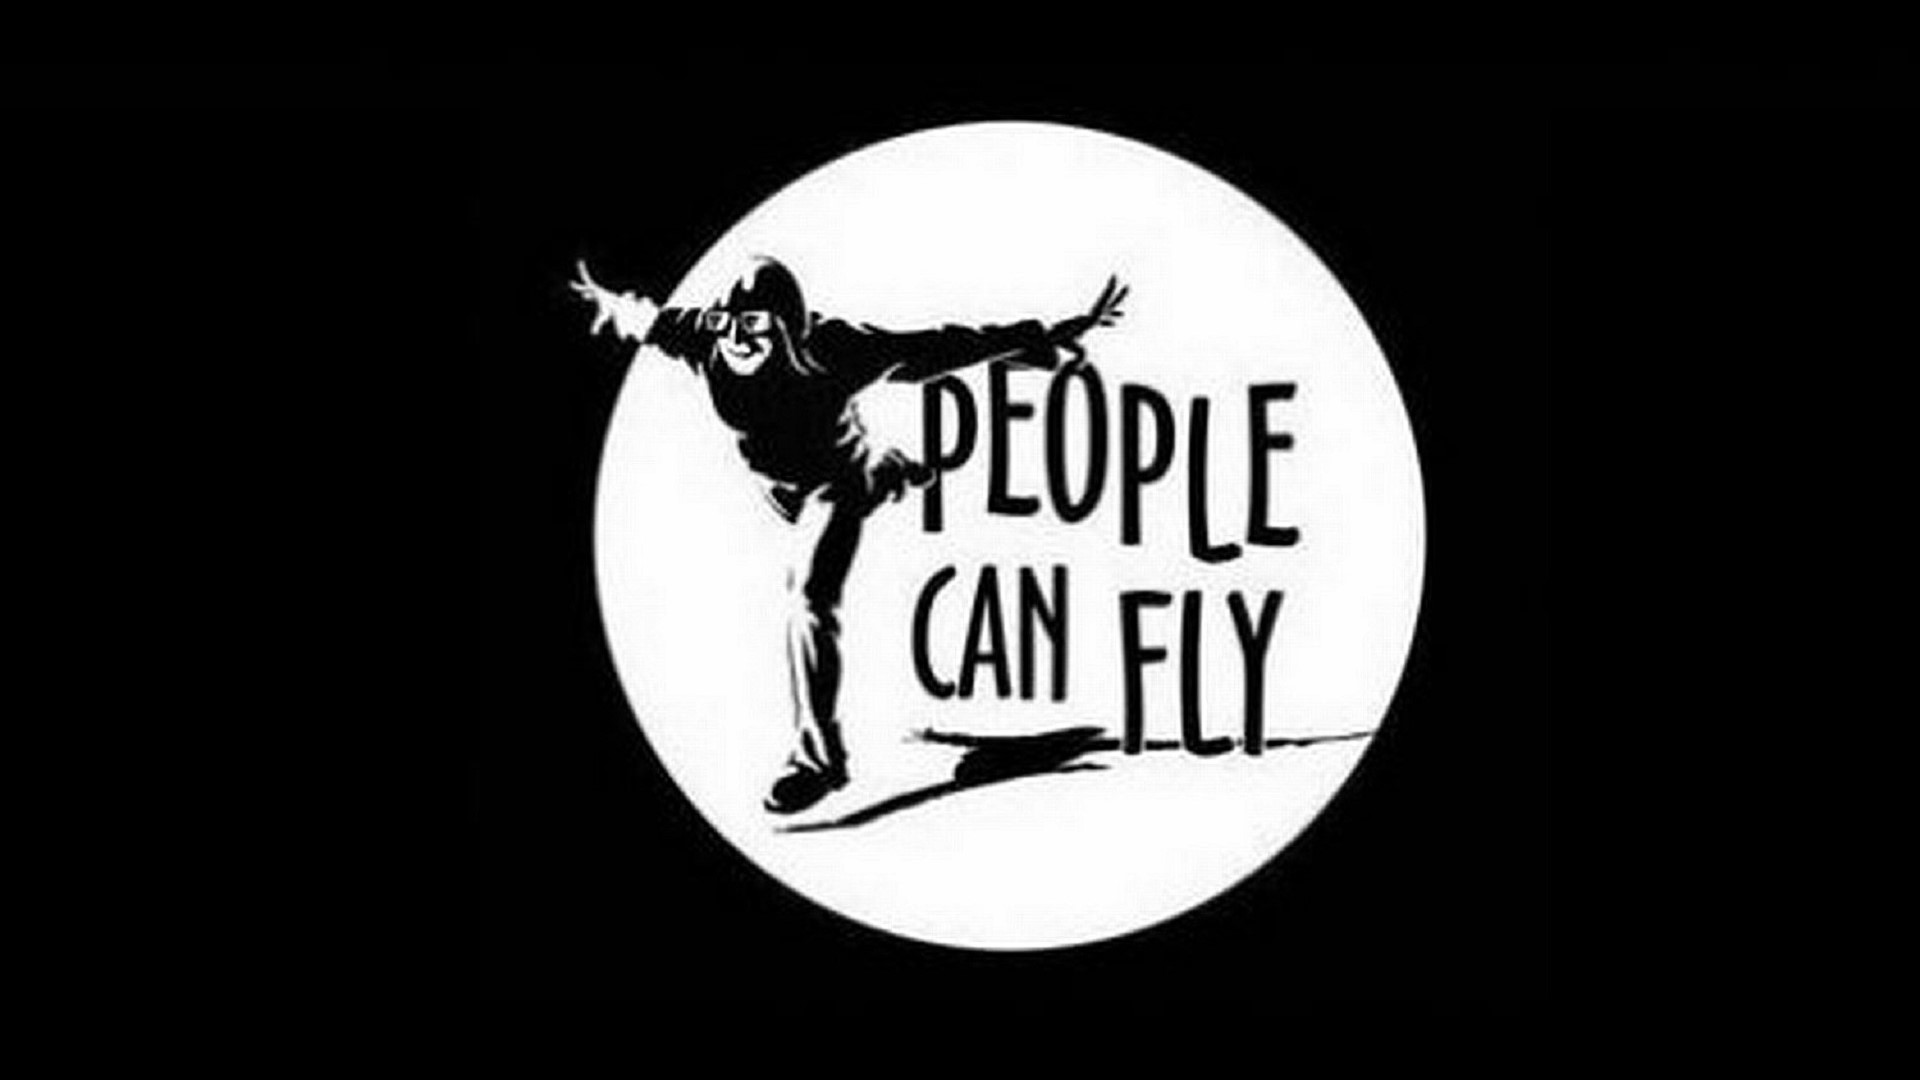 معرفی پروژه Maverick از استودیوی People Can Fly و انتشار آن توسط مایکروسافت